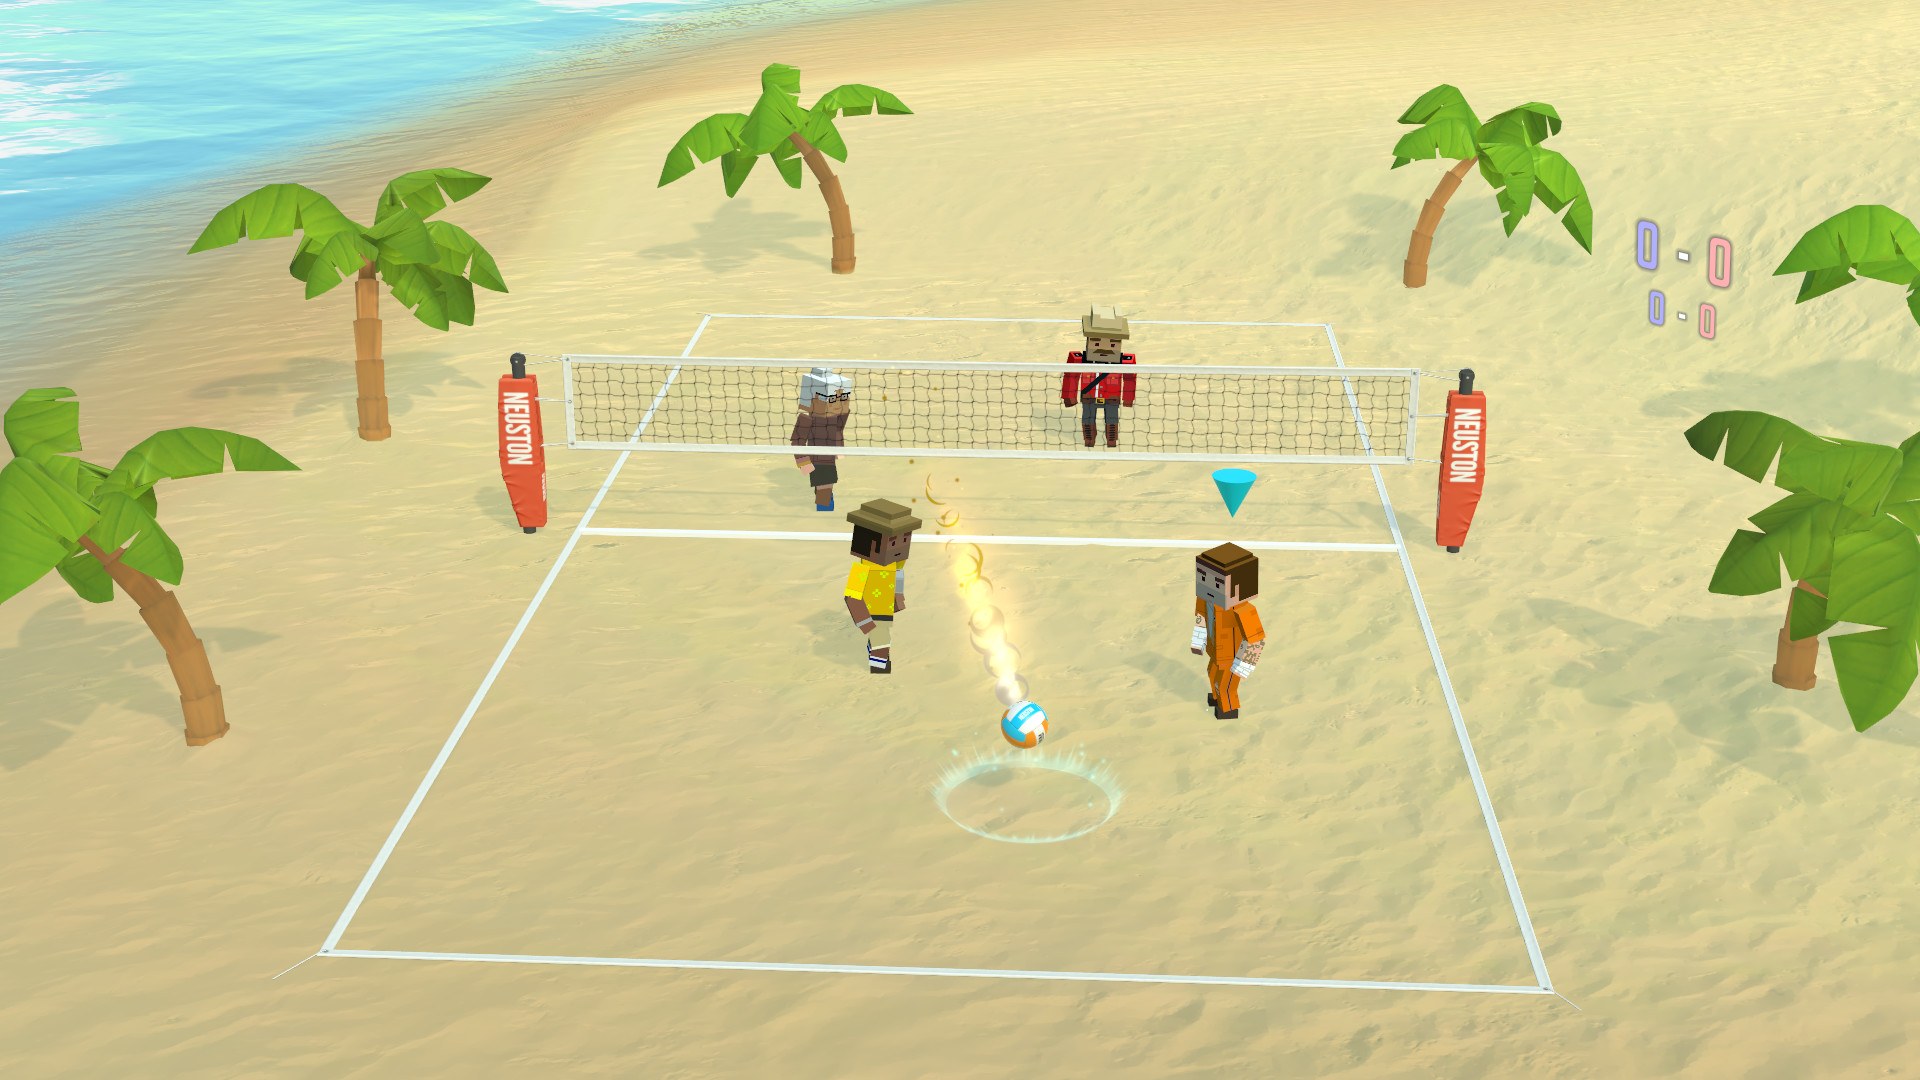 Волейбол хорошей игры. Пляжный волейбол игра стим. Спортивные игры. Игра в волейбол. Спортивные игры на песке.